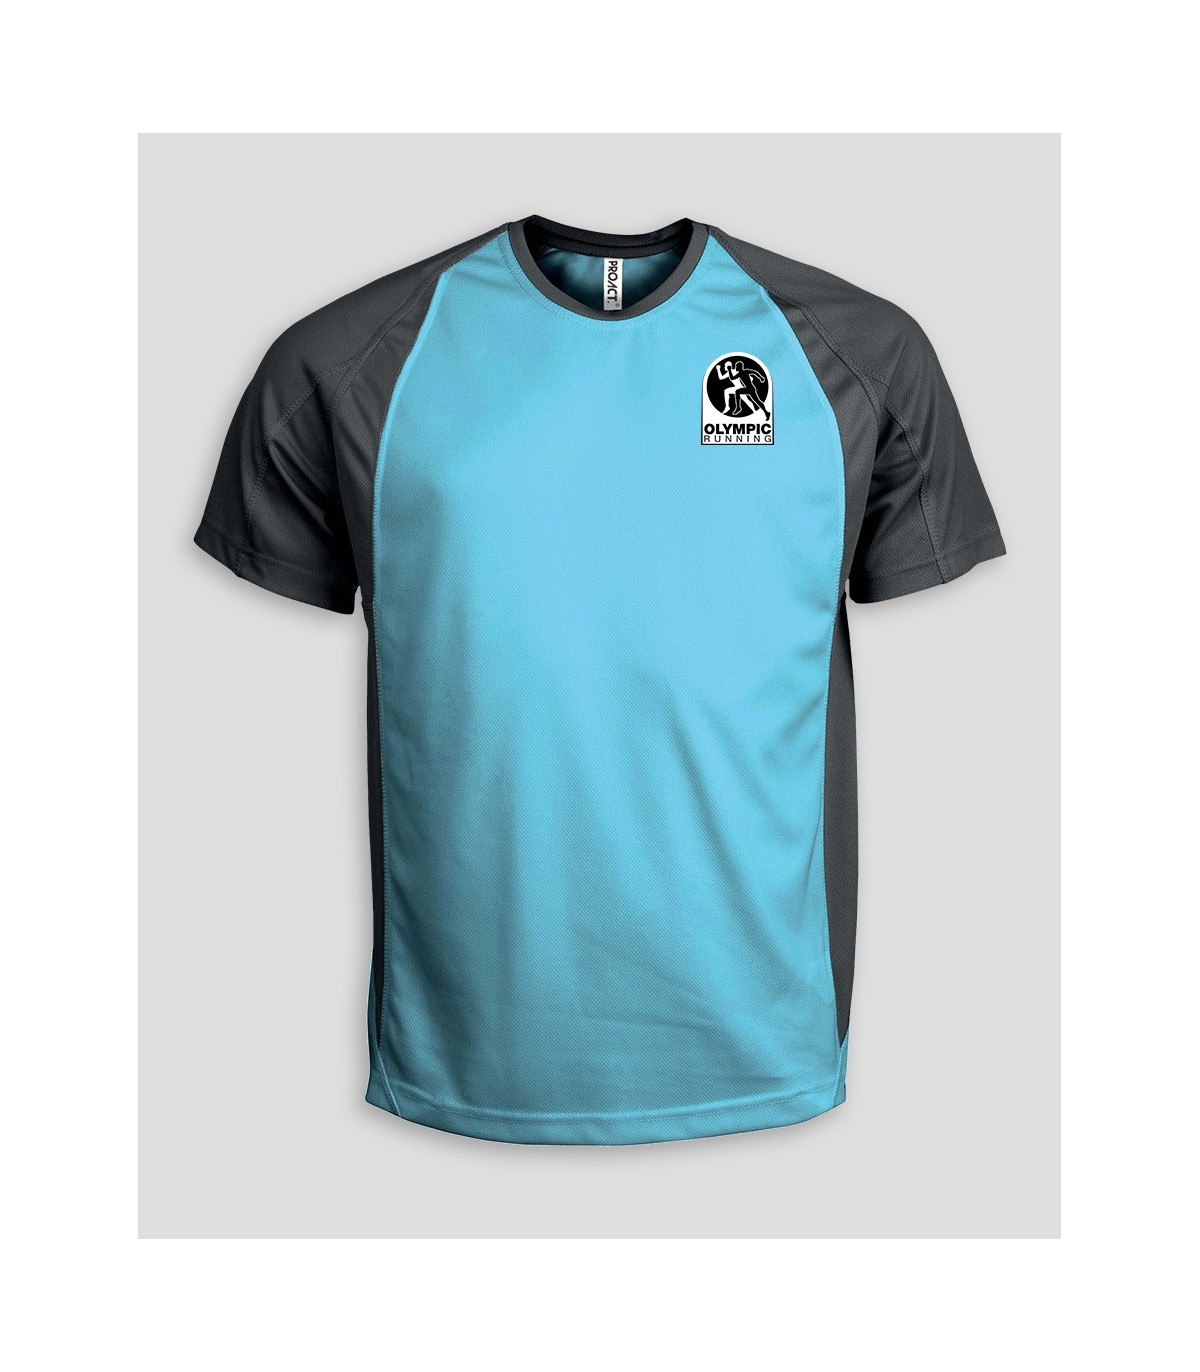 T-shirt sport - Running - Homme - PROACT - bleu - 100% polyester